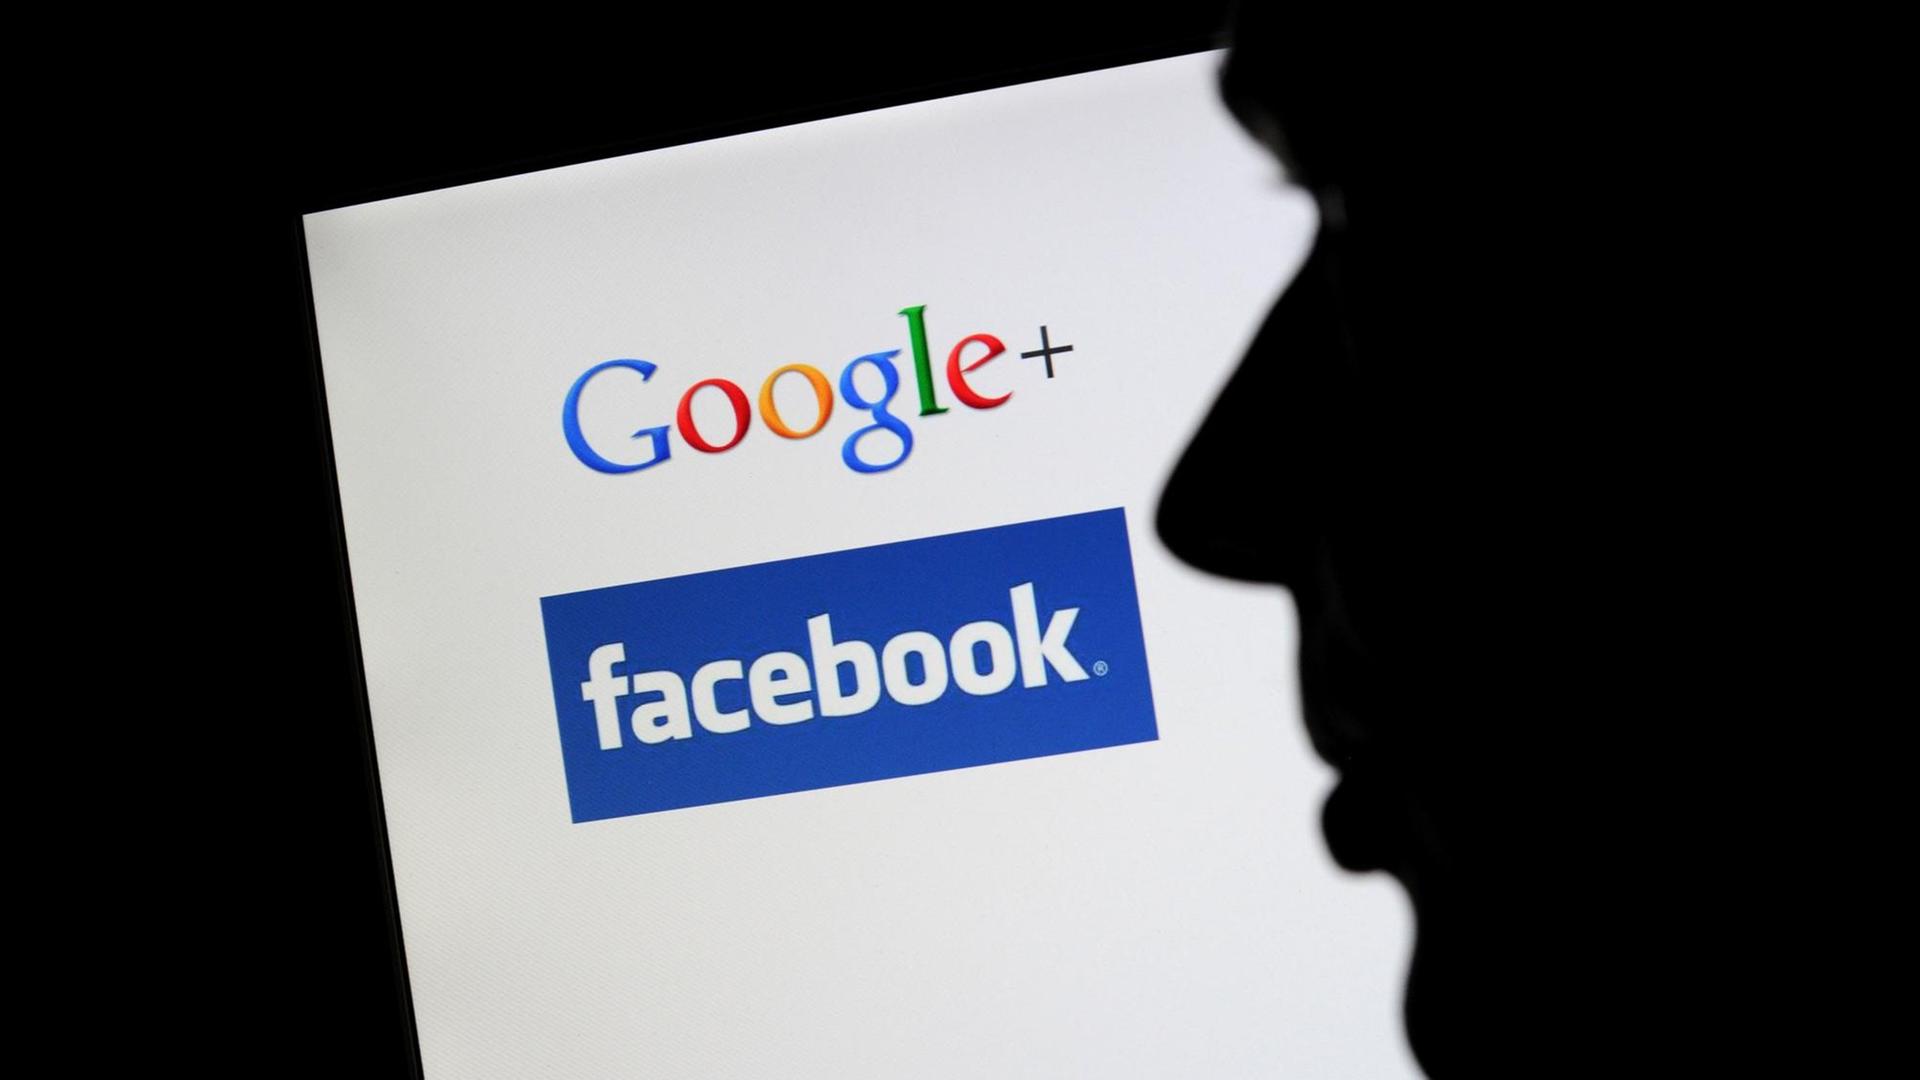 Die Silhouette eines Mannes zeichnet sich vor einem Computerbildschirm mit den Logos von Google+ und Facebook ab.